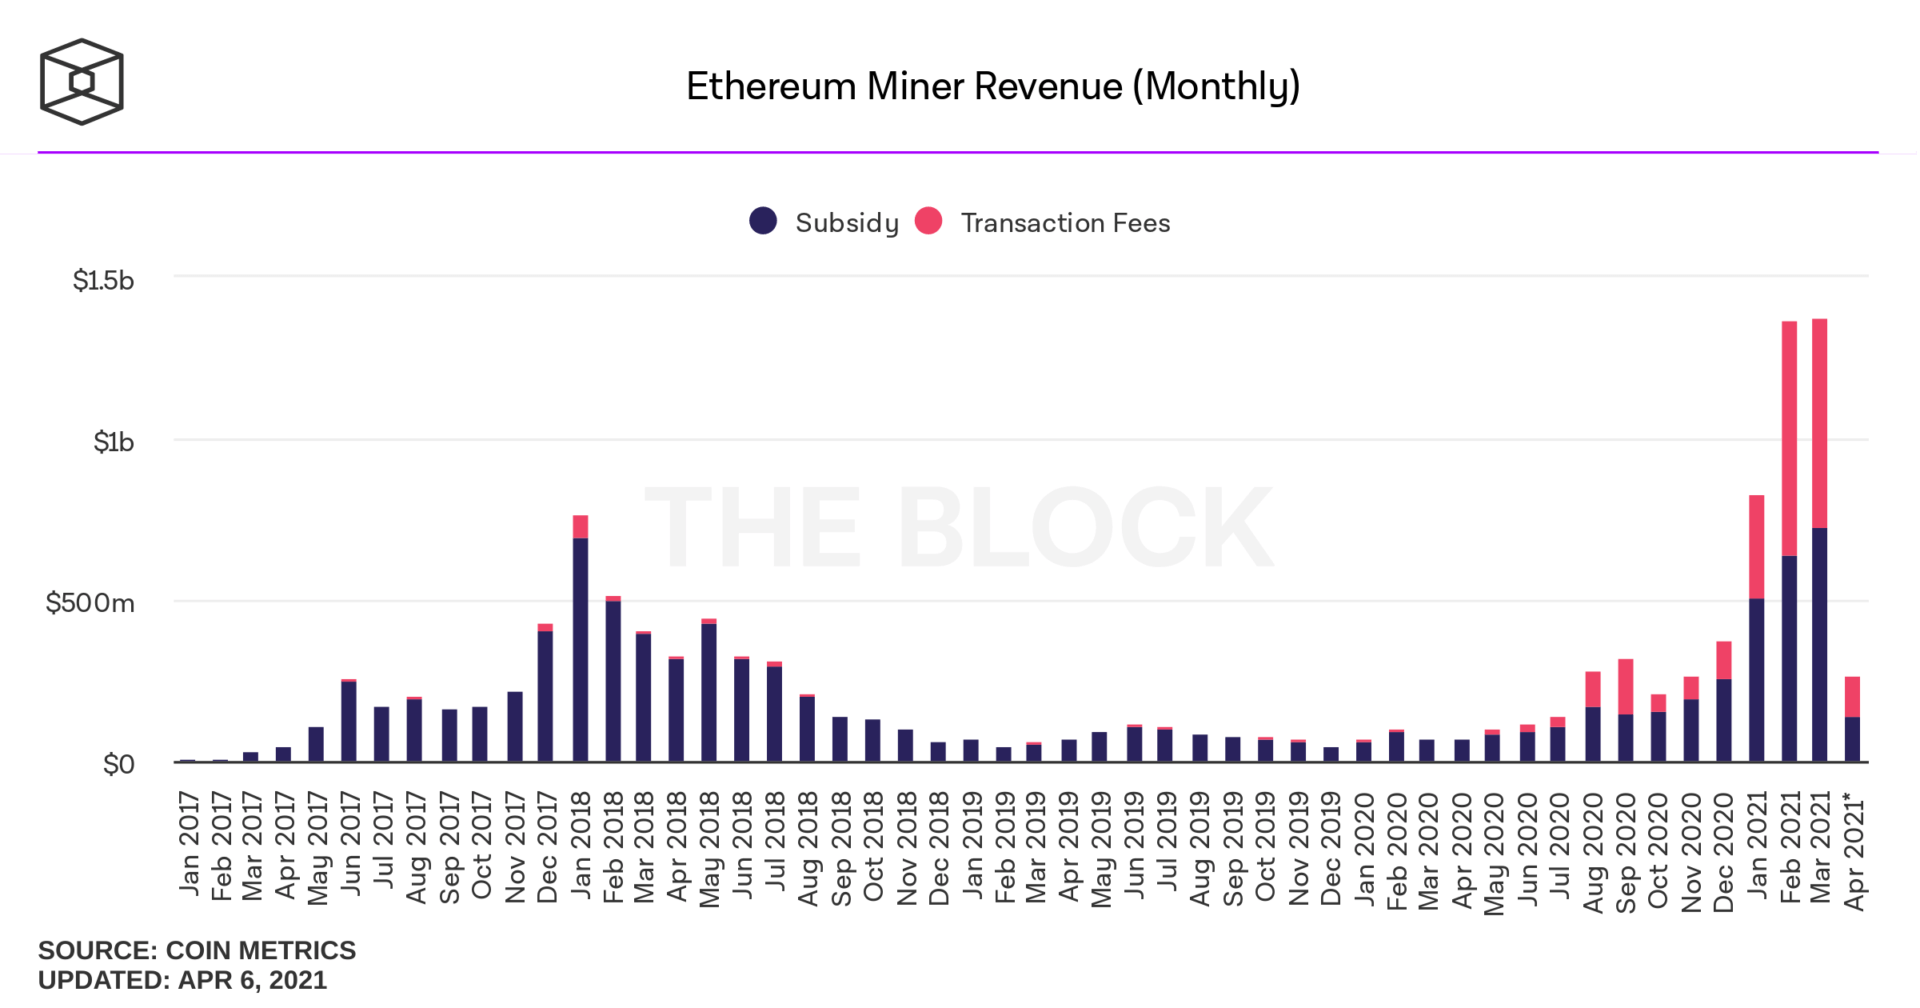 Revenus mensuels des mineurs sur le réseau Ethereum en milliards de dollars réparti entre récompenses de bloc et frais de transaction